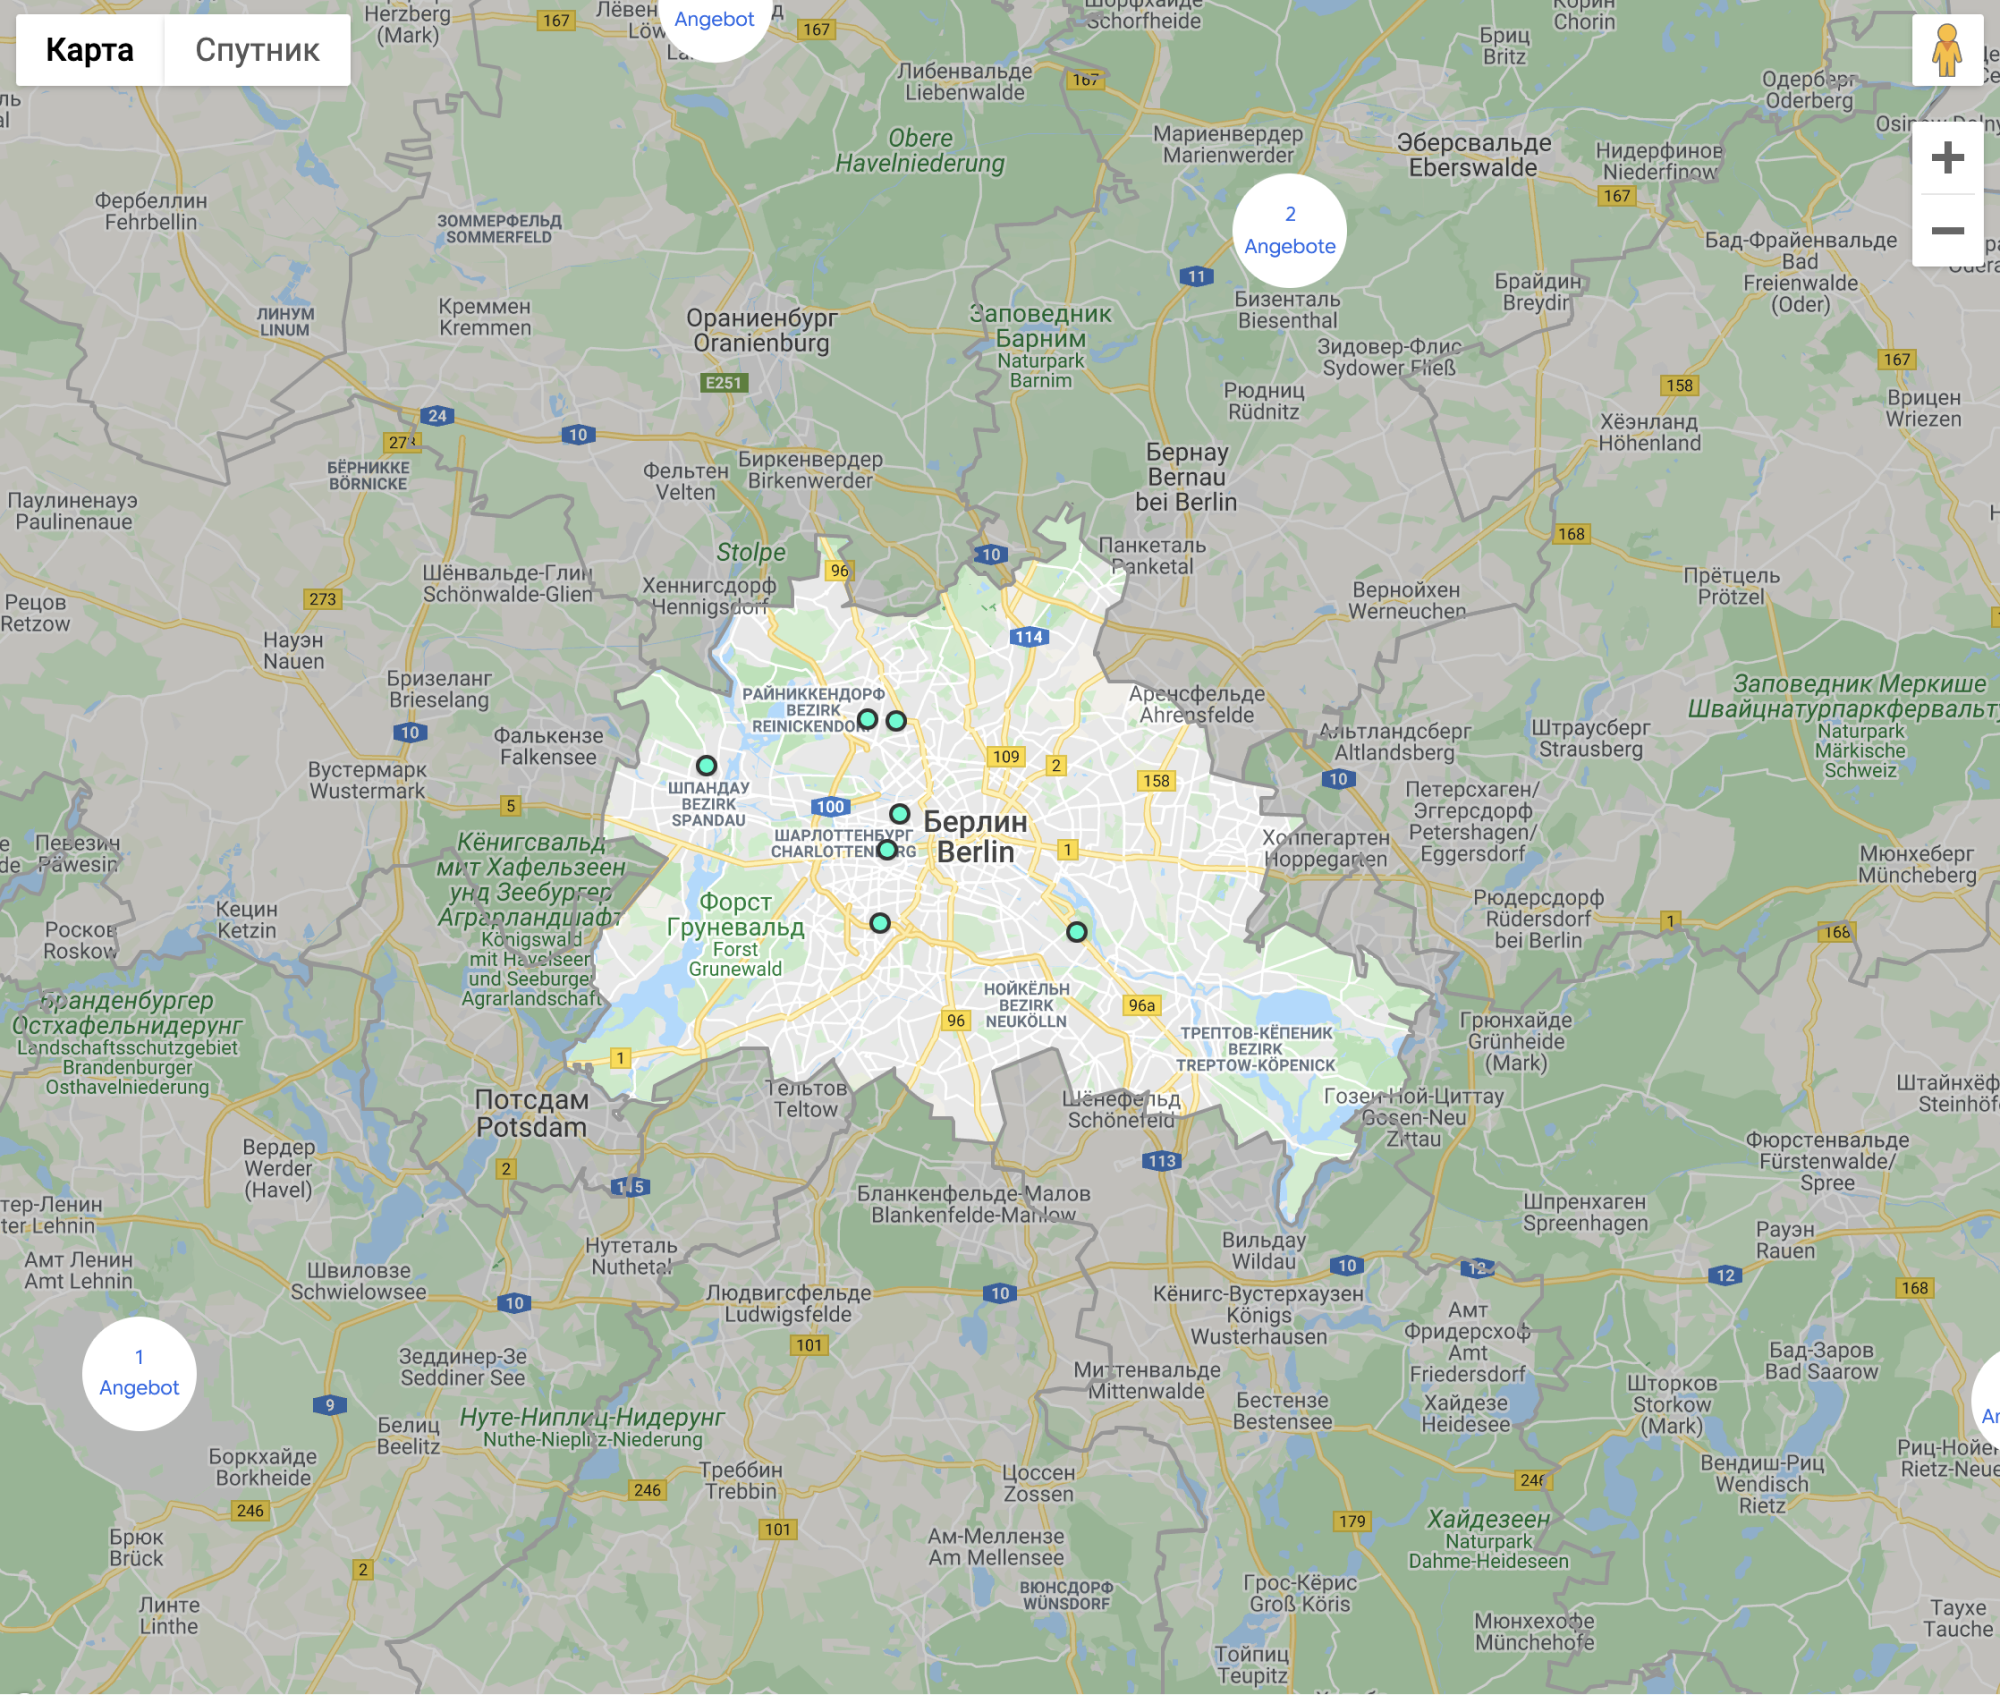 Так выглядит карта с предложениями квартир на сайте недвижимости Германии. Источник: immobilienscout24.de